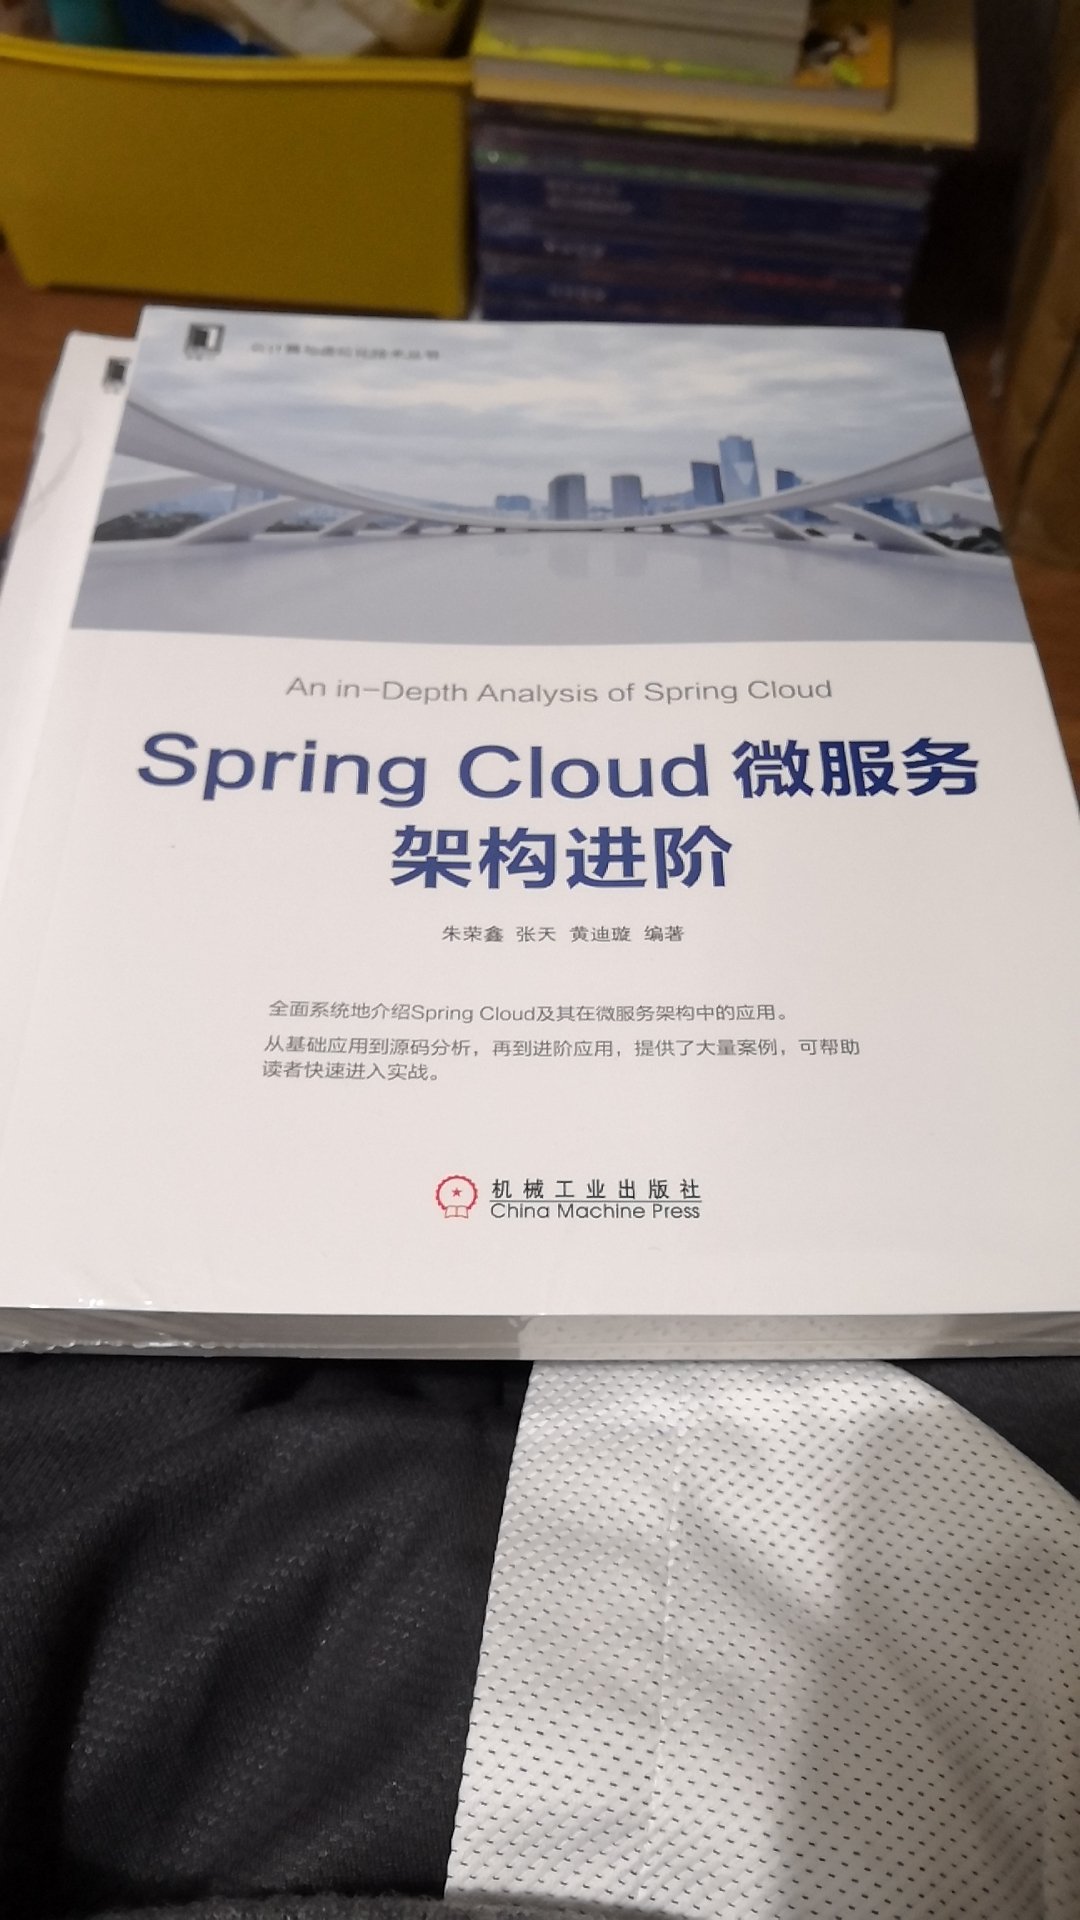 详细介绍了spring cloud的各个组件，一般般